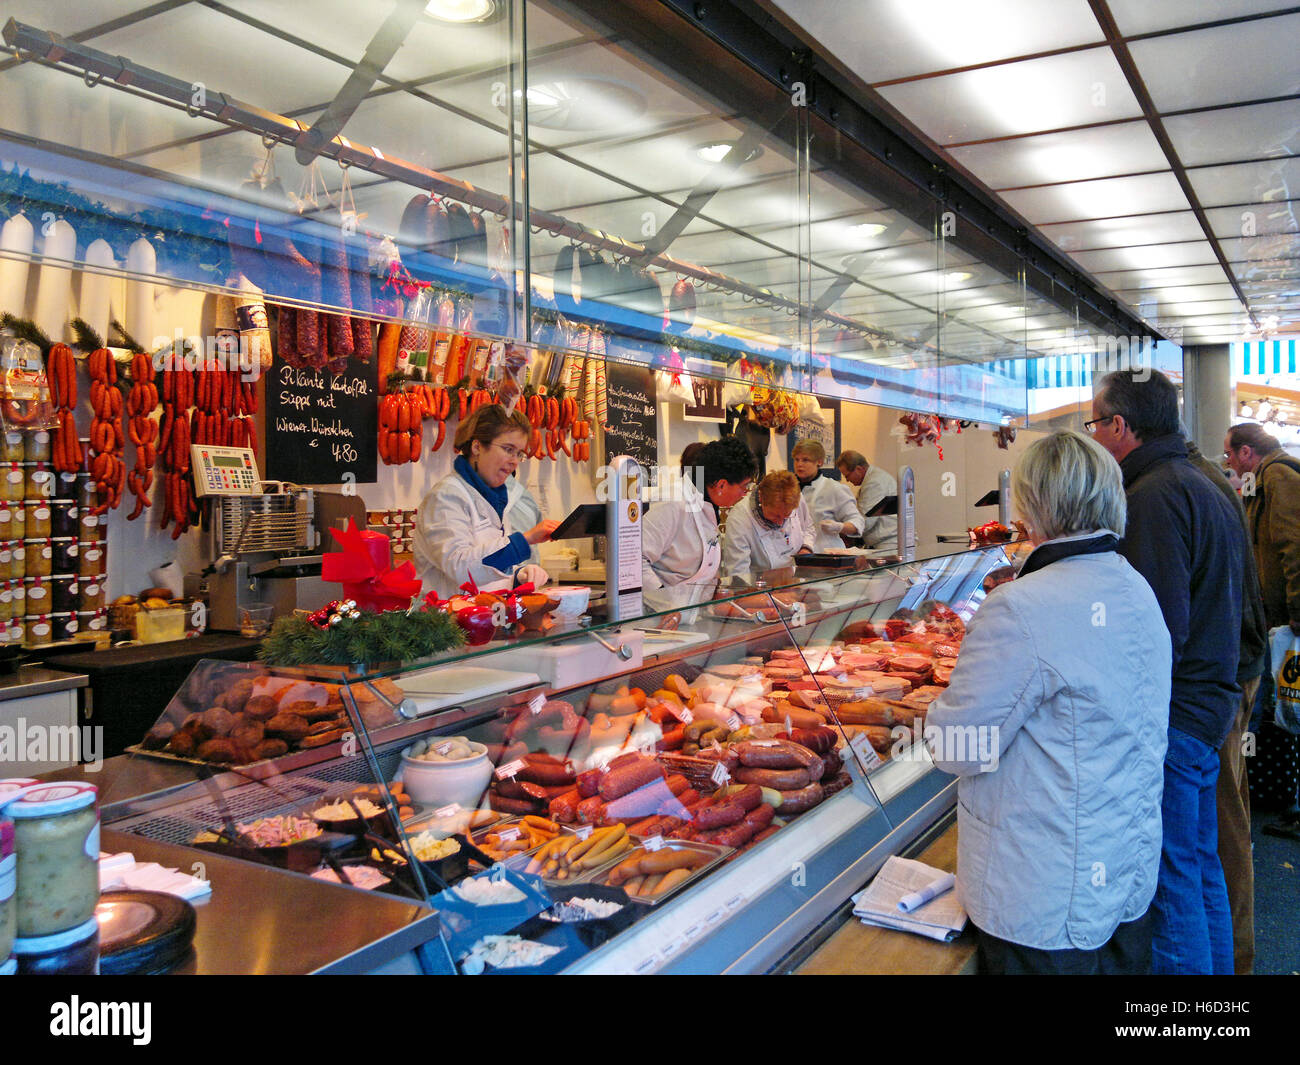 Carlsplatz Market. Dusseldorf, Germany Stock Photo - Alamy